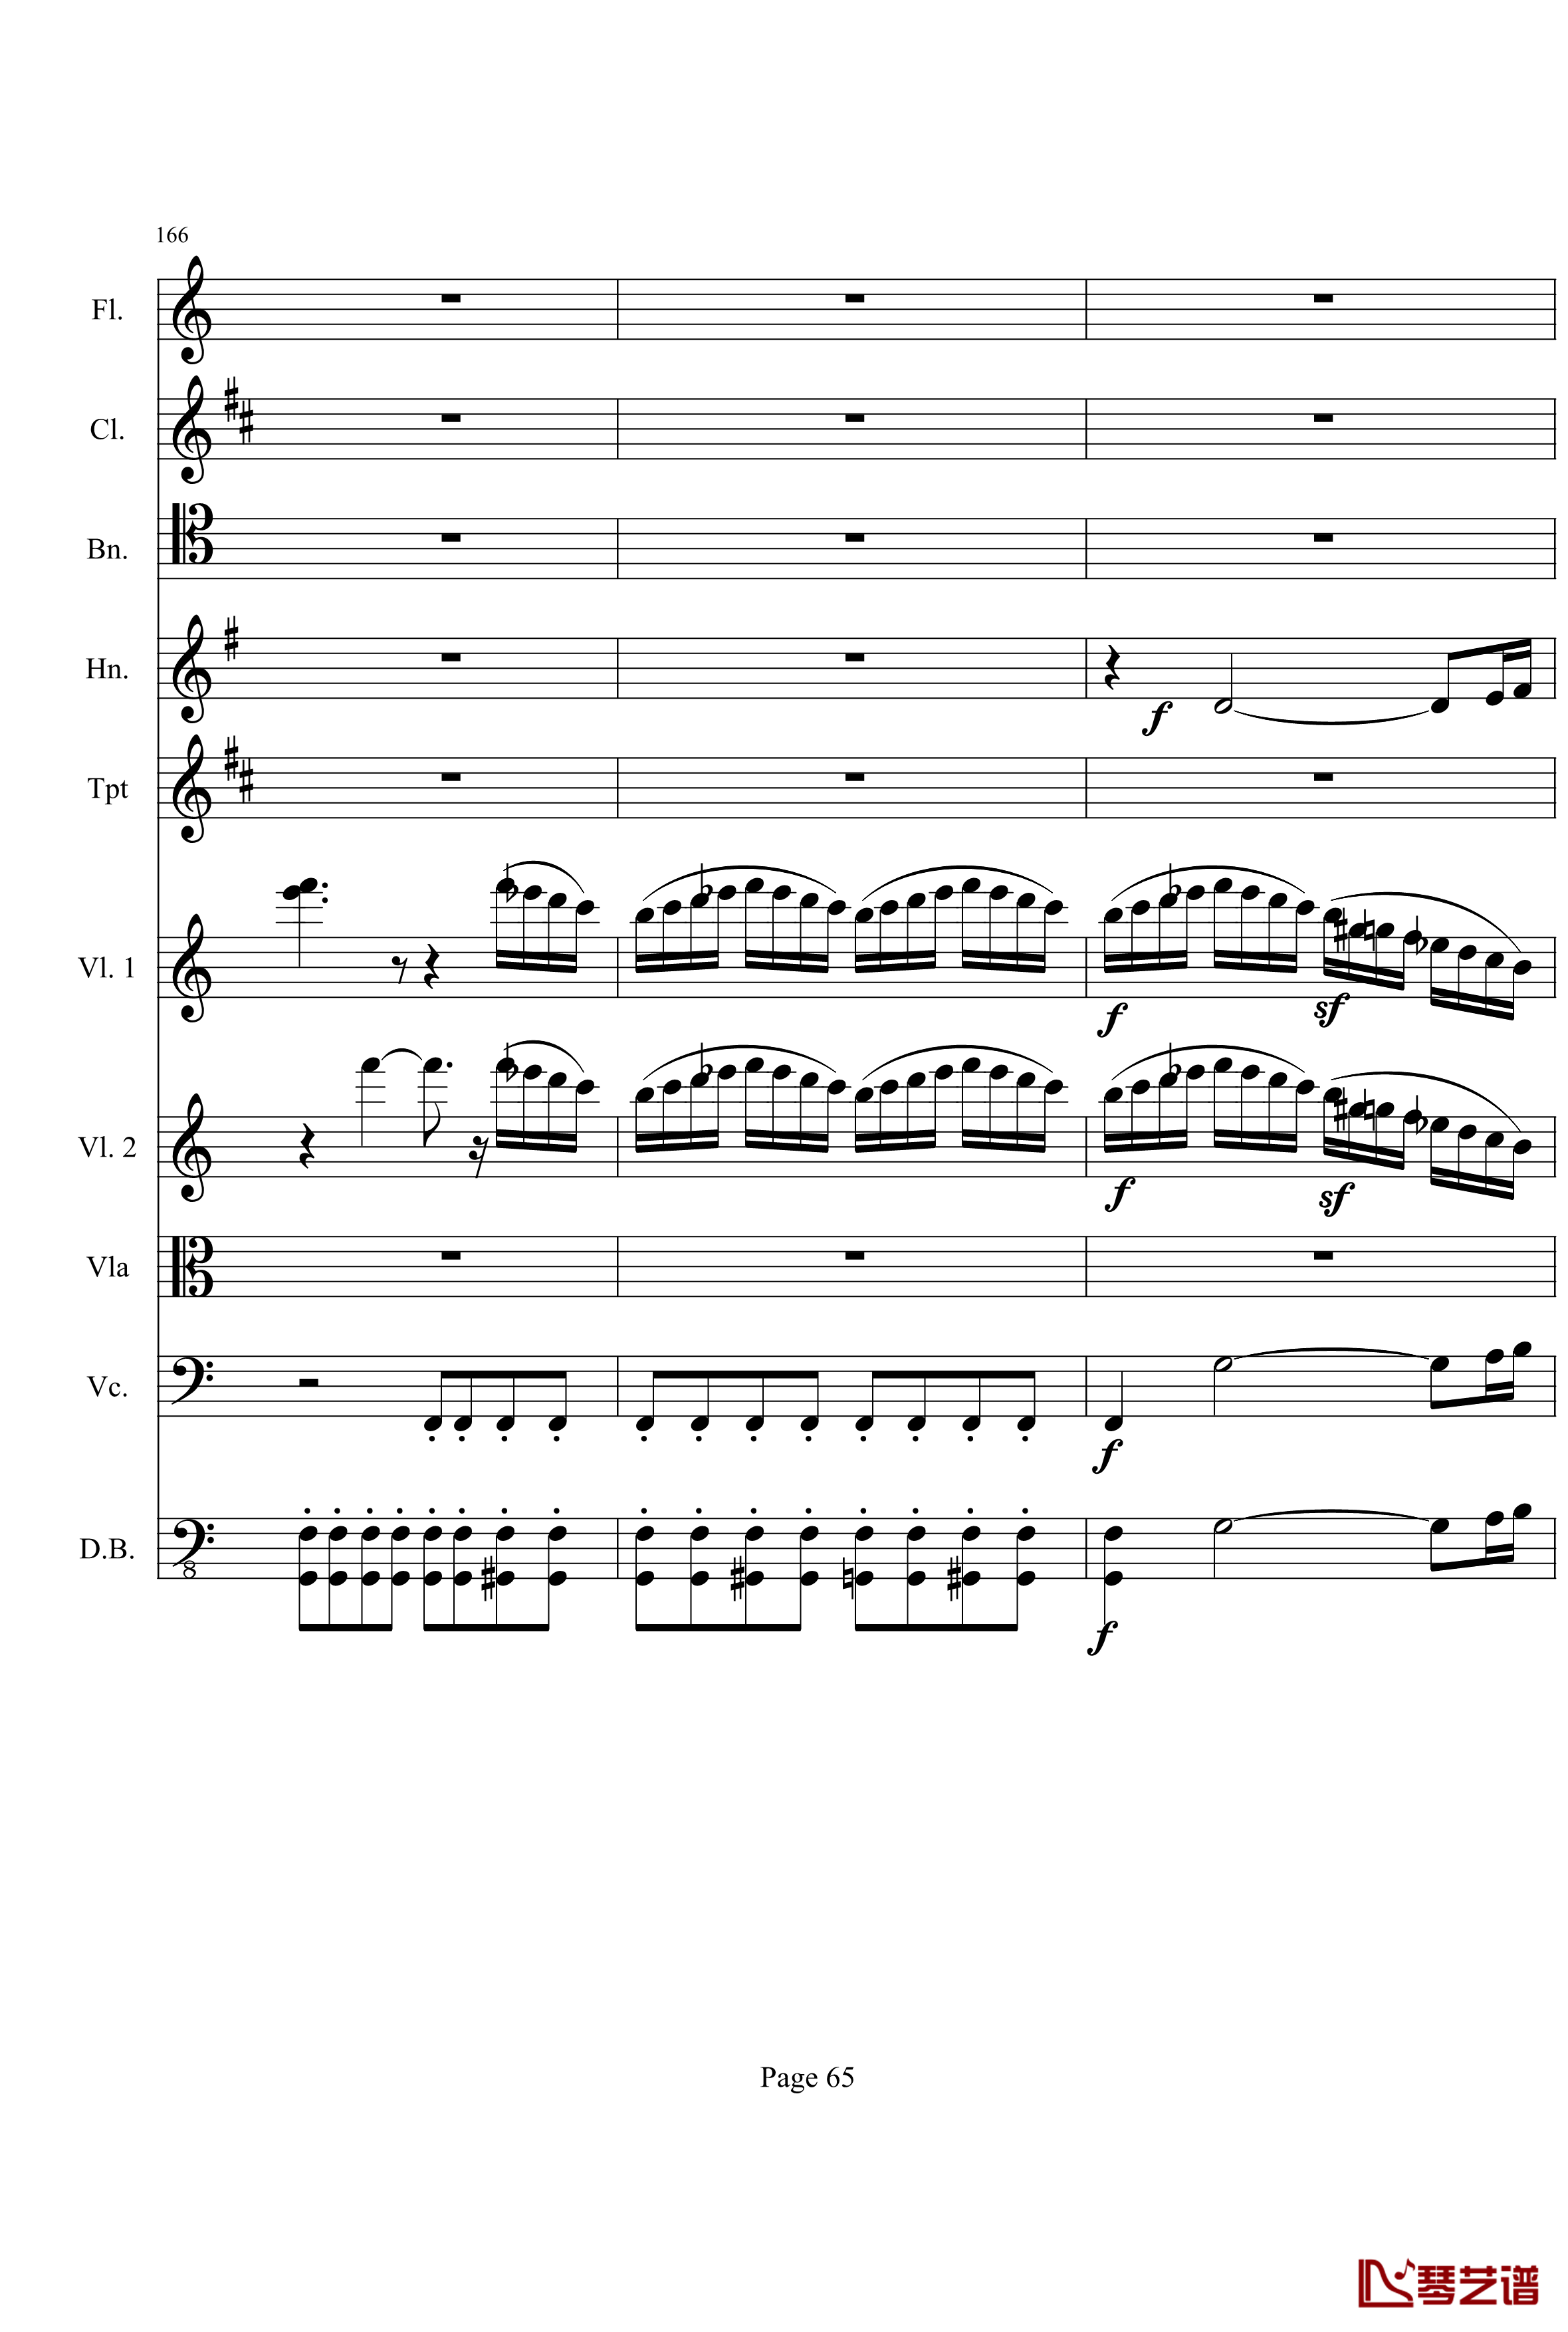 奏鸣曲之交响钢琴谱-第21首-Ⅰ-贝多芬-beethoven65